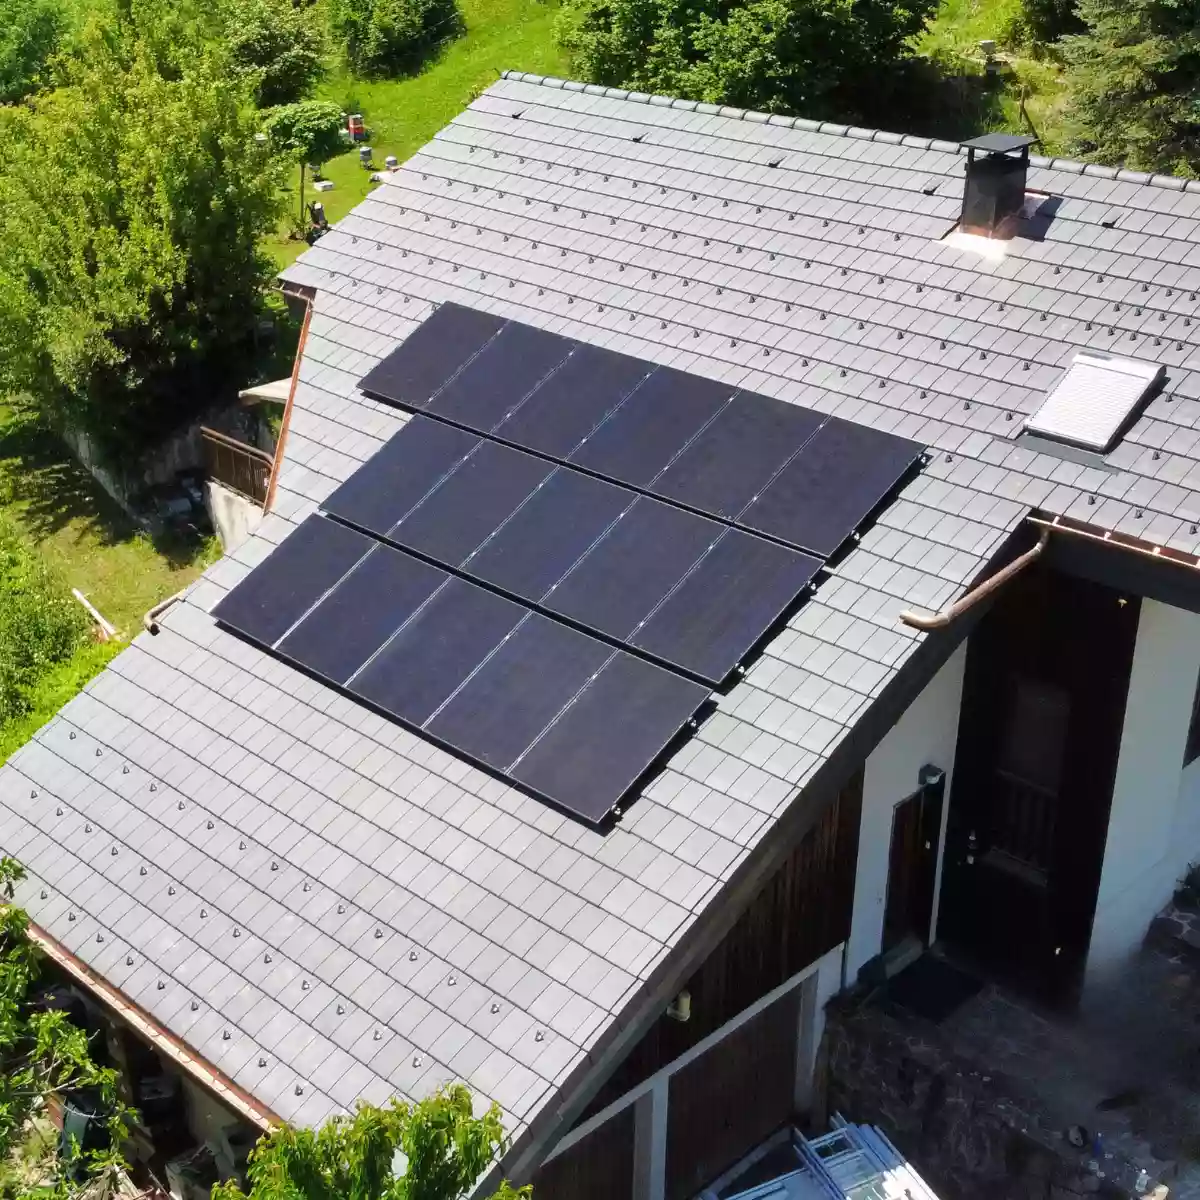 Nettoyage des panneaux solaires : est-ce vraiment rentable ?